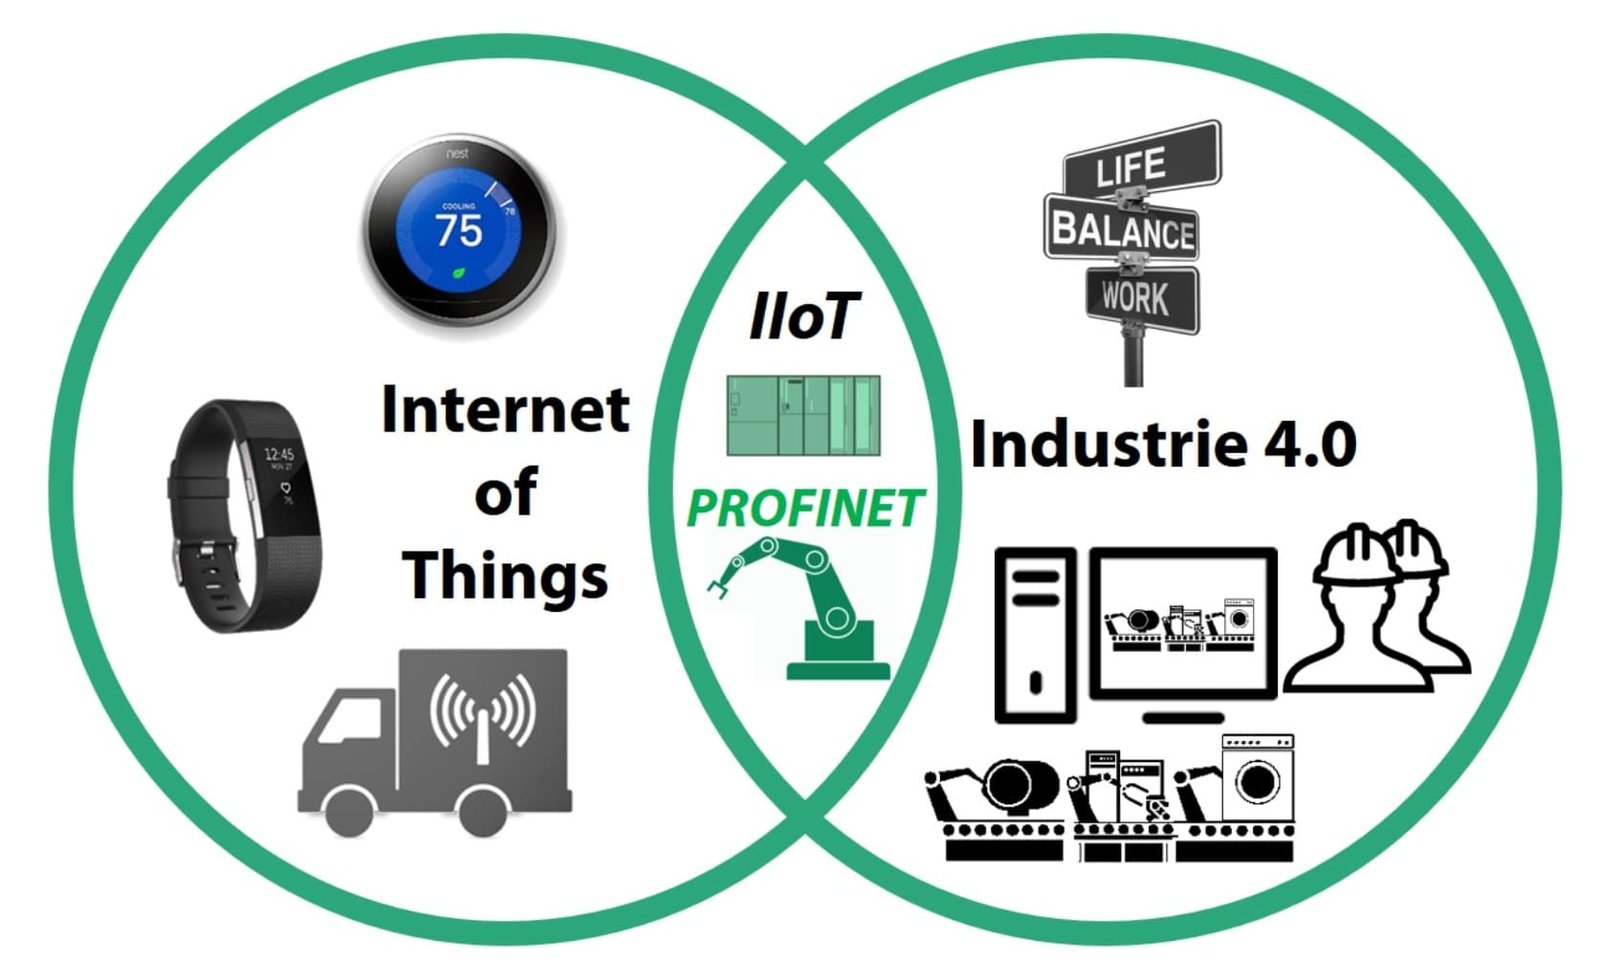 Understanding: The Industrial Internet of Things